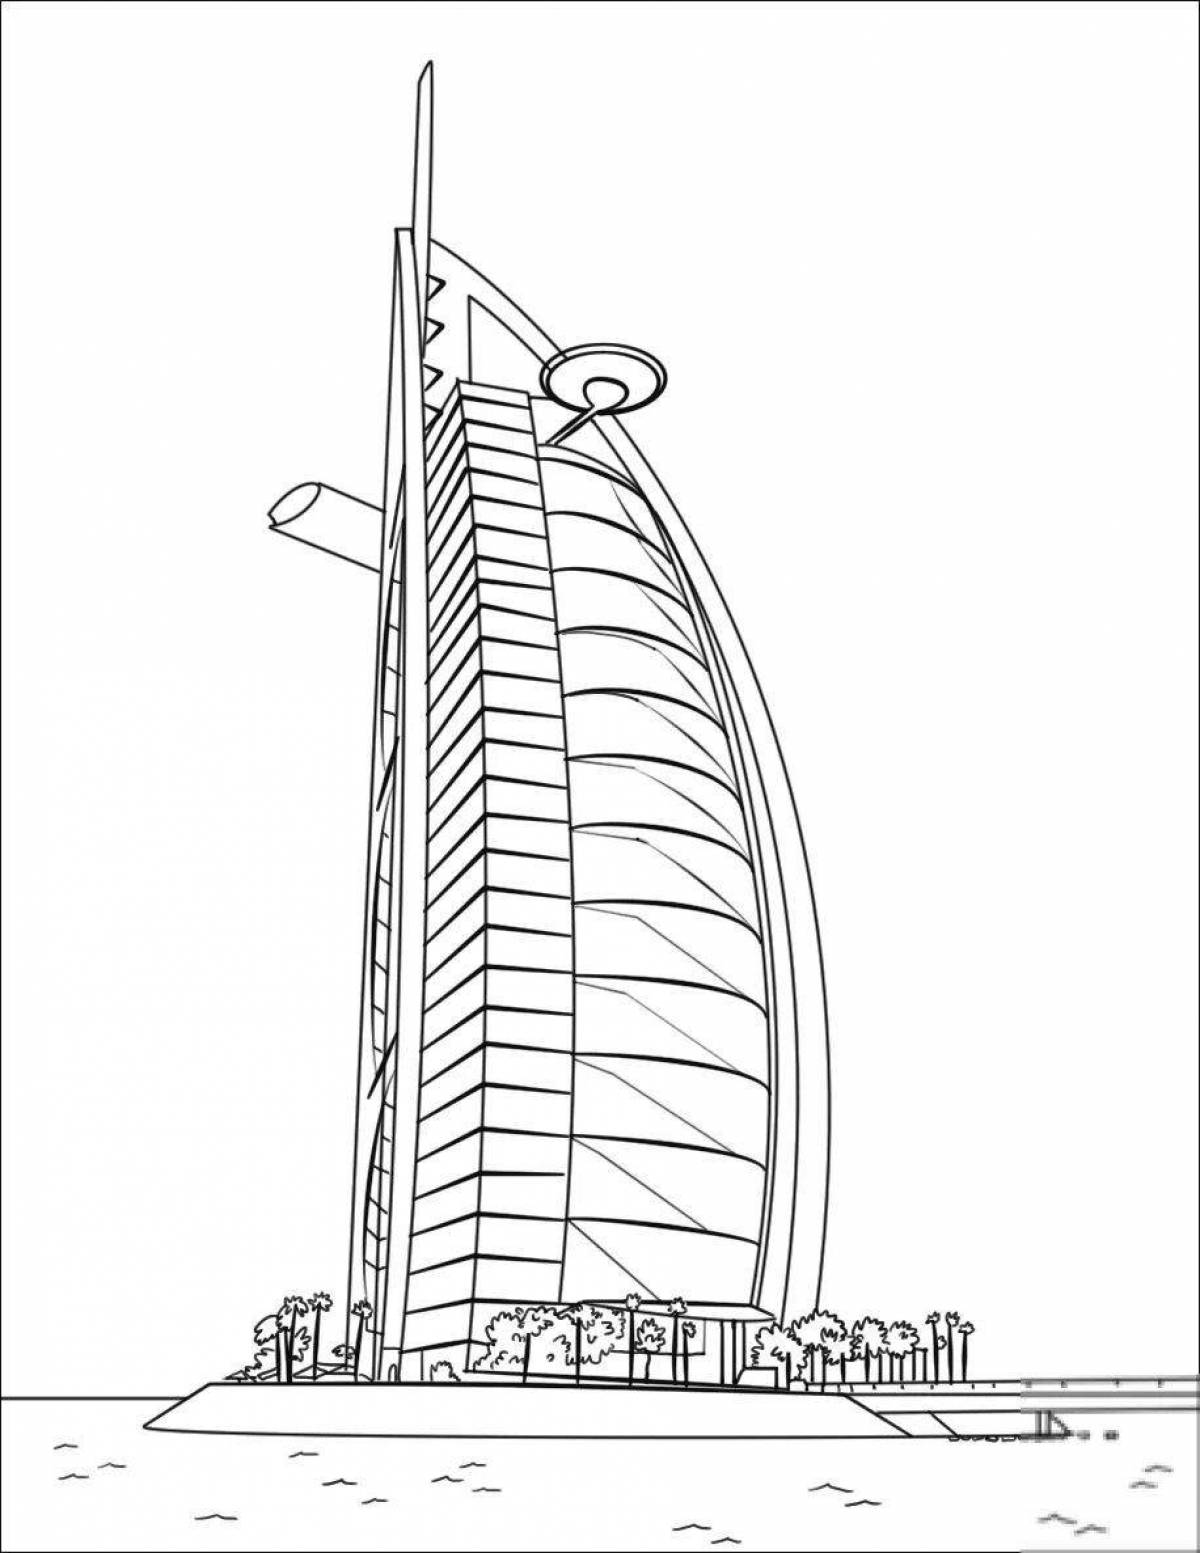 Impressive skyscraper coloring book for kids